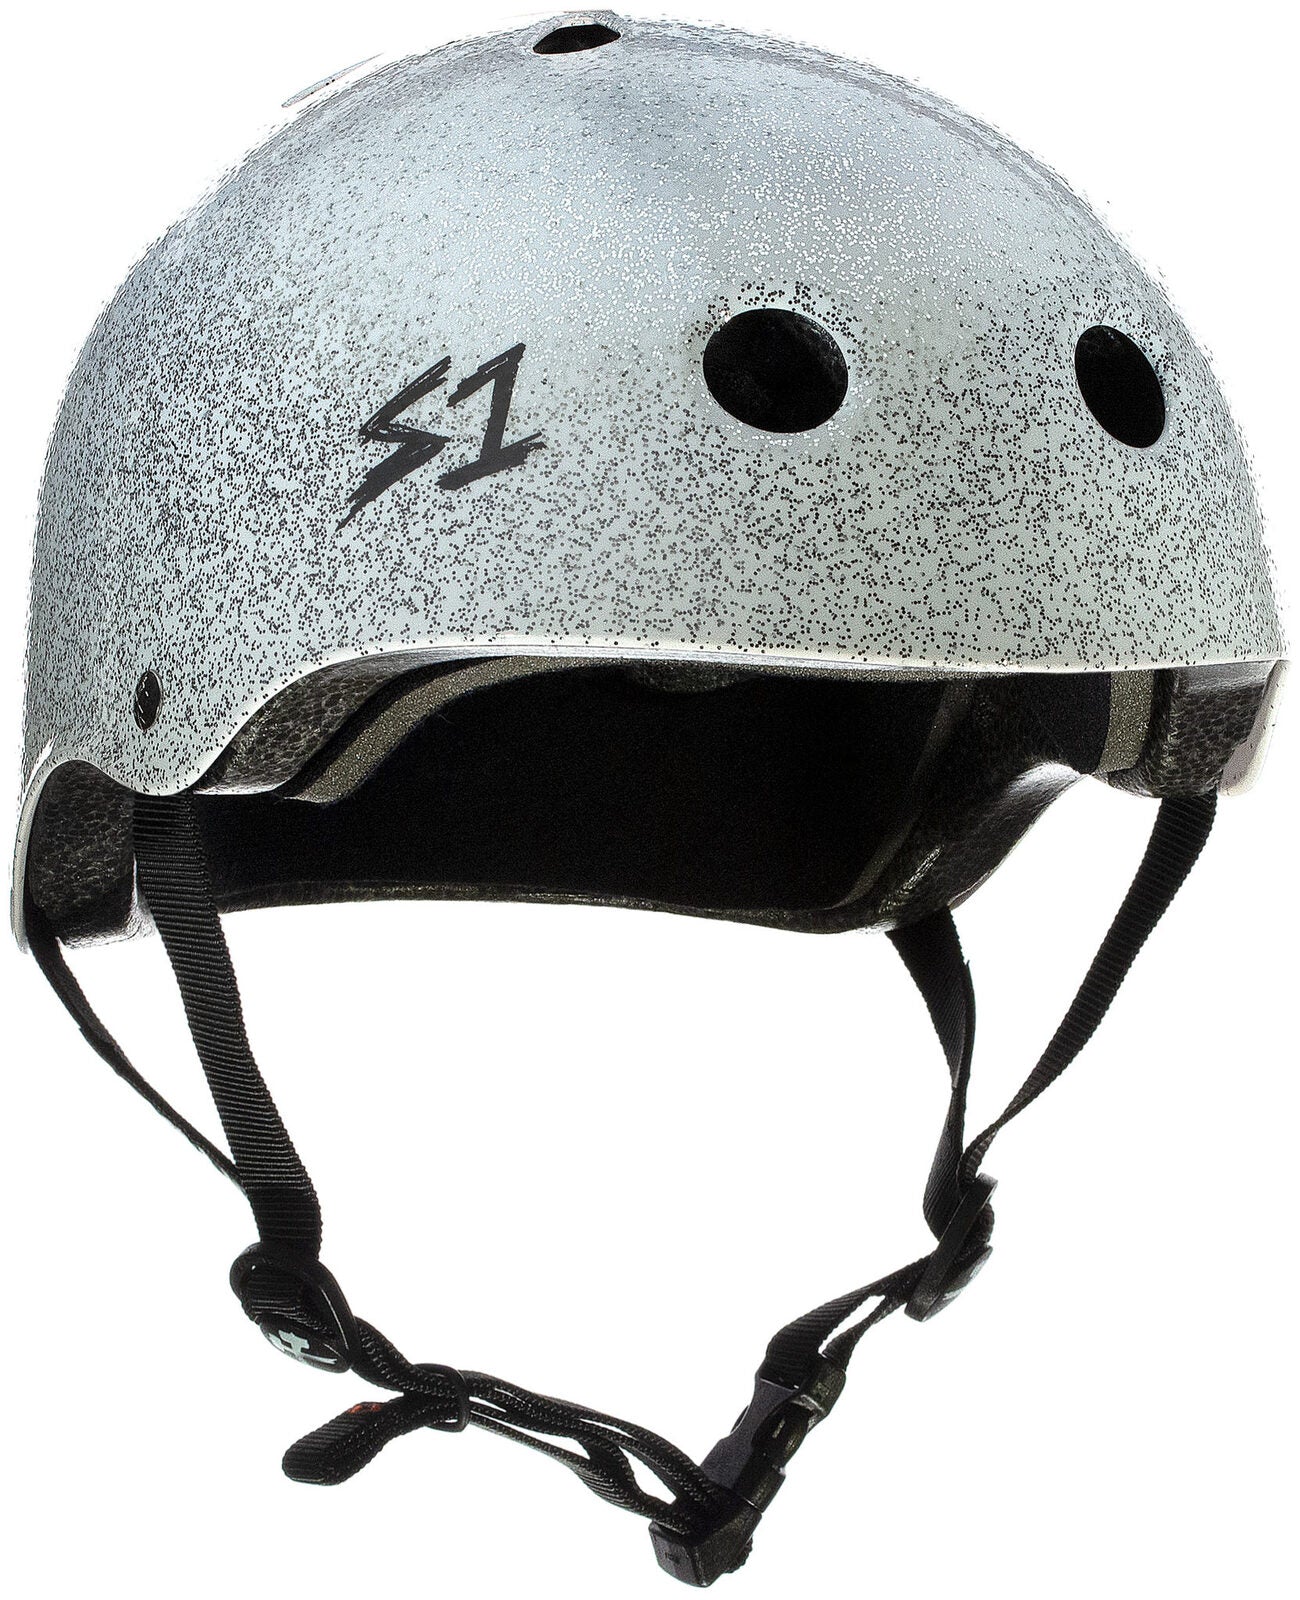 S1 Lifer Helmet Glitter White Metal Flake